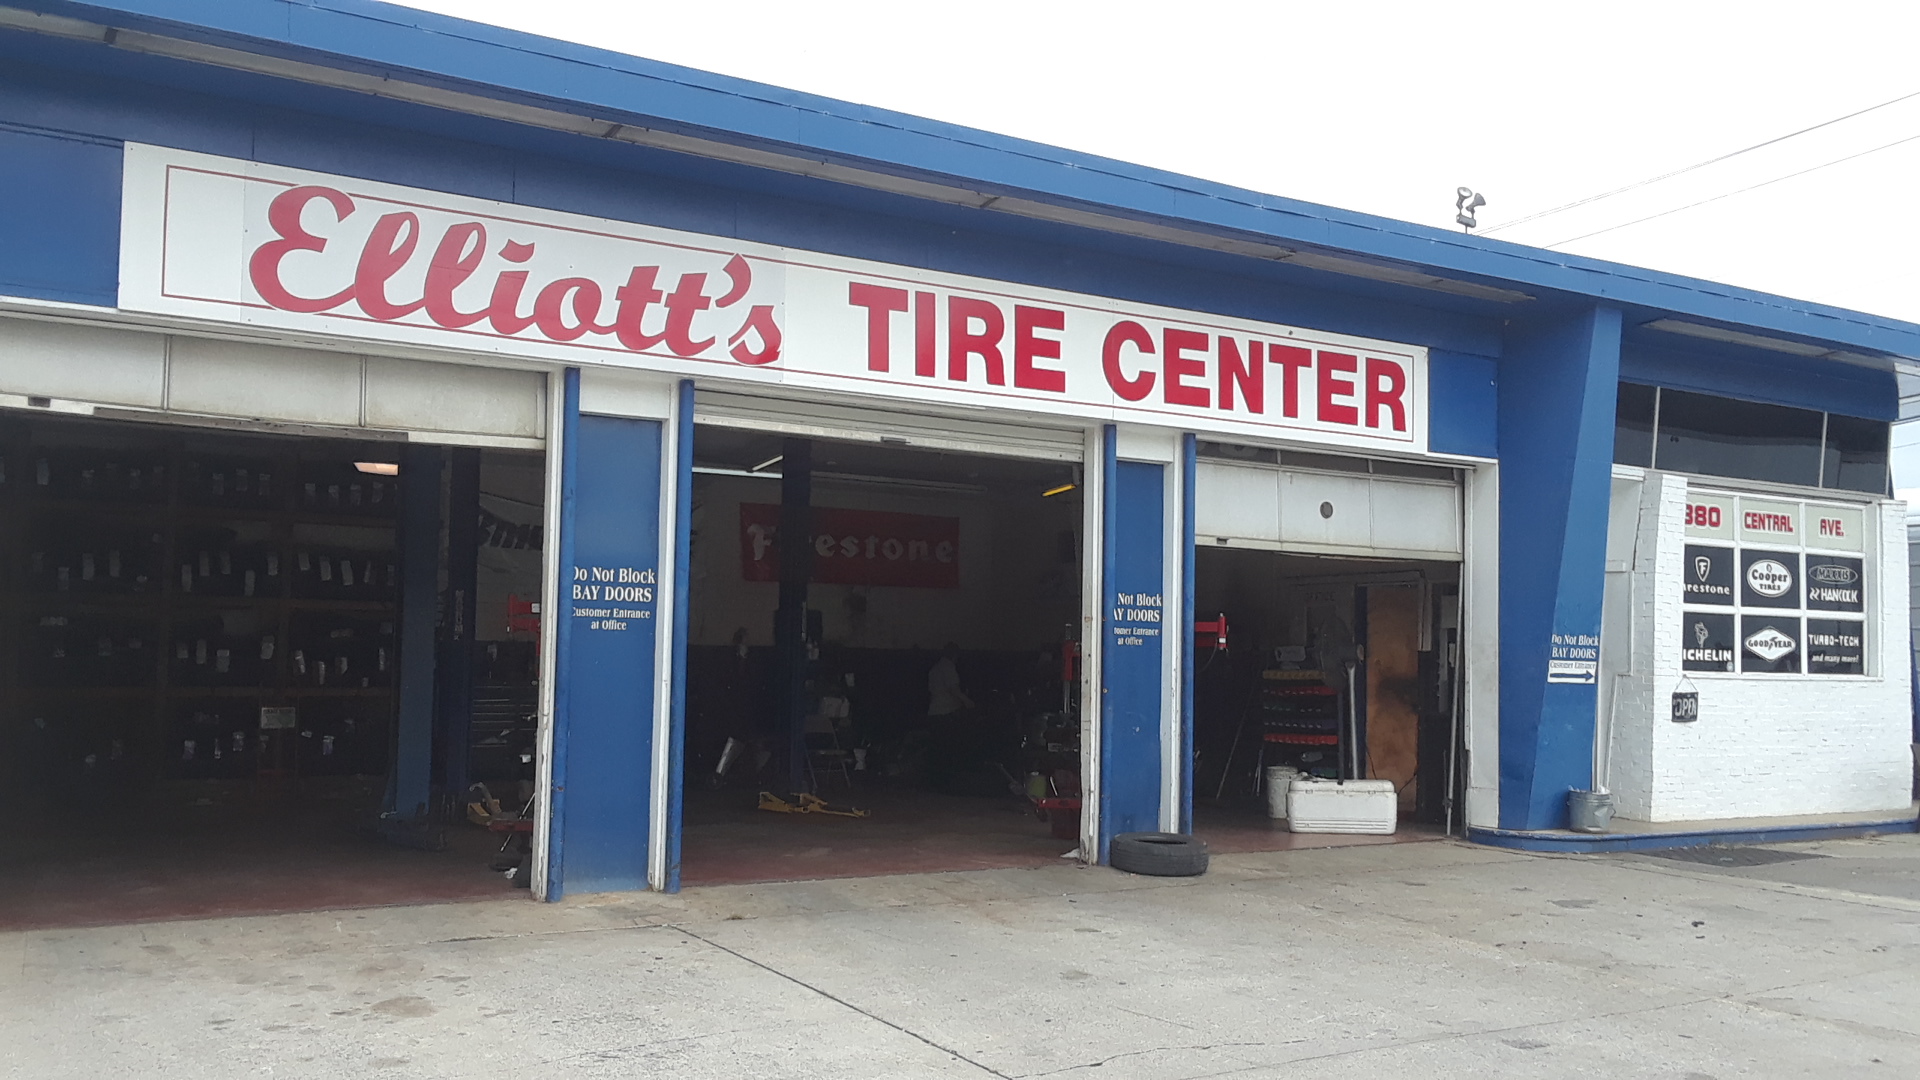 Elliott's Tire Center